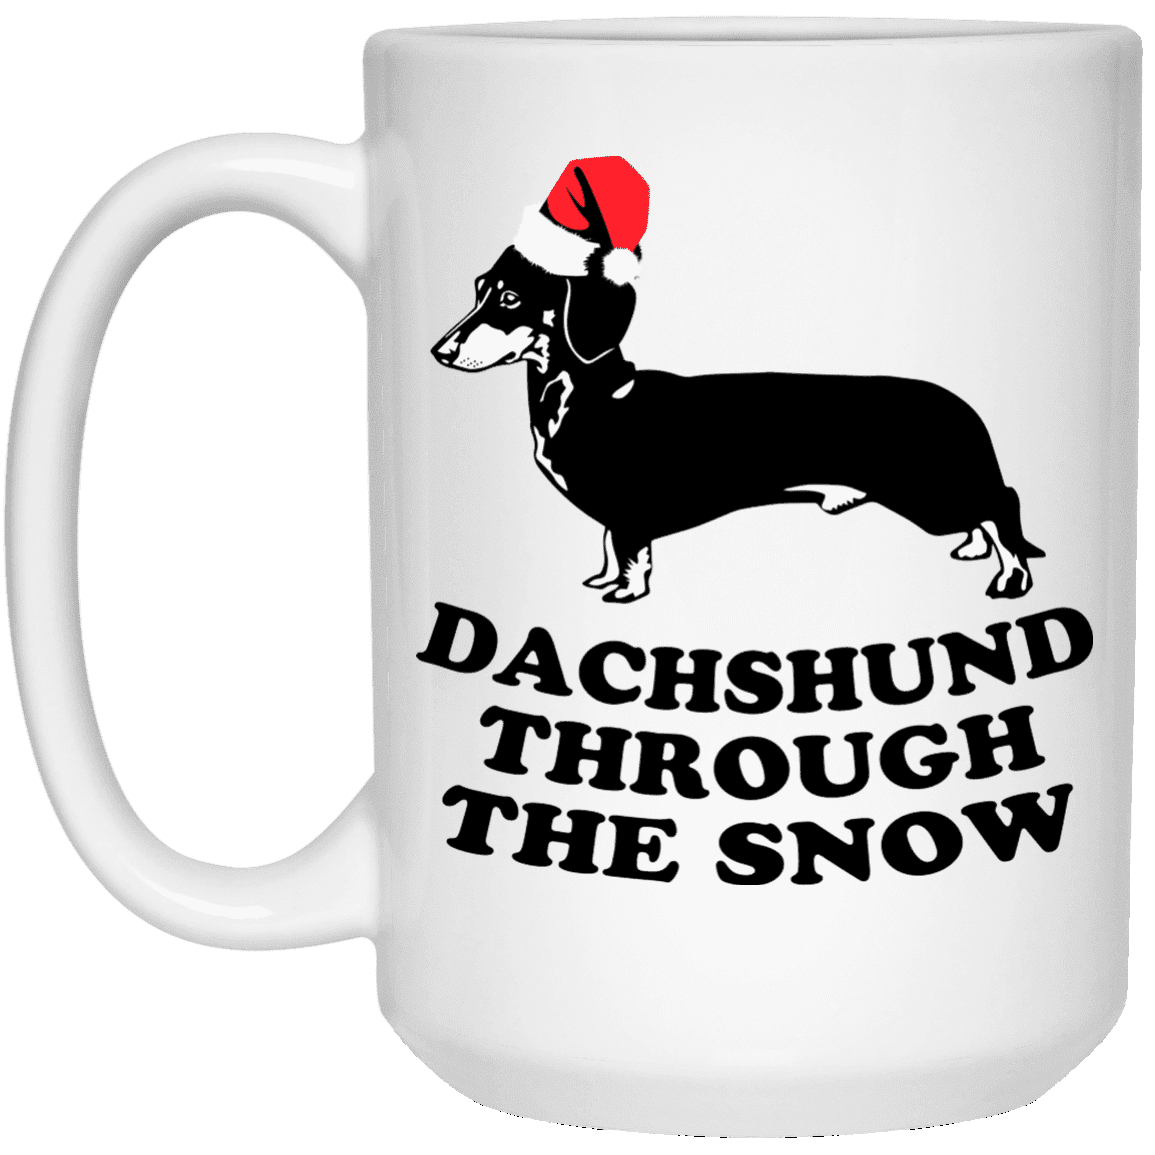 Dachshund Through The Snow - Mugs.